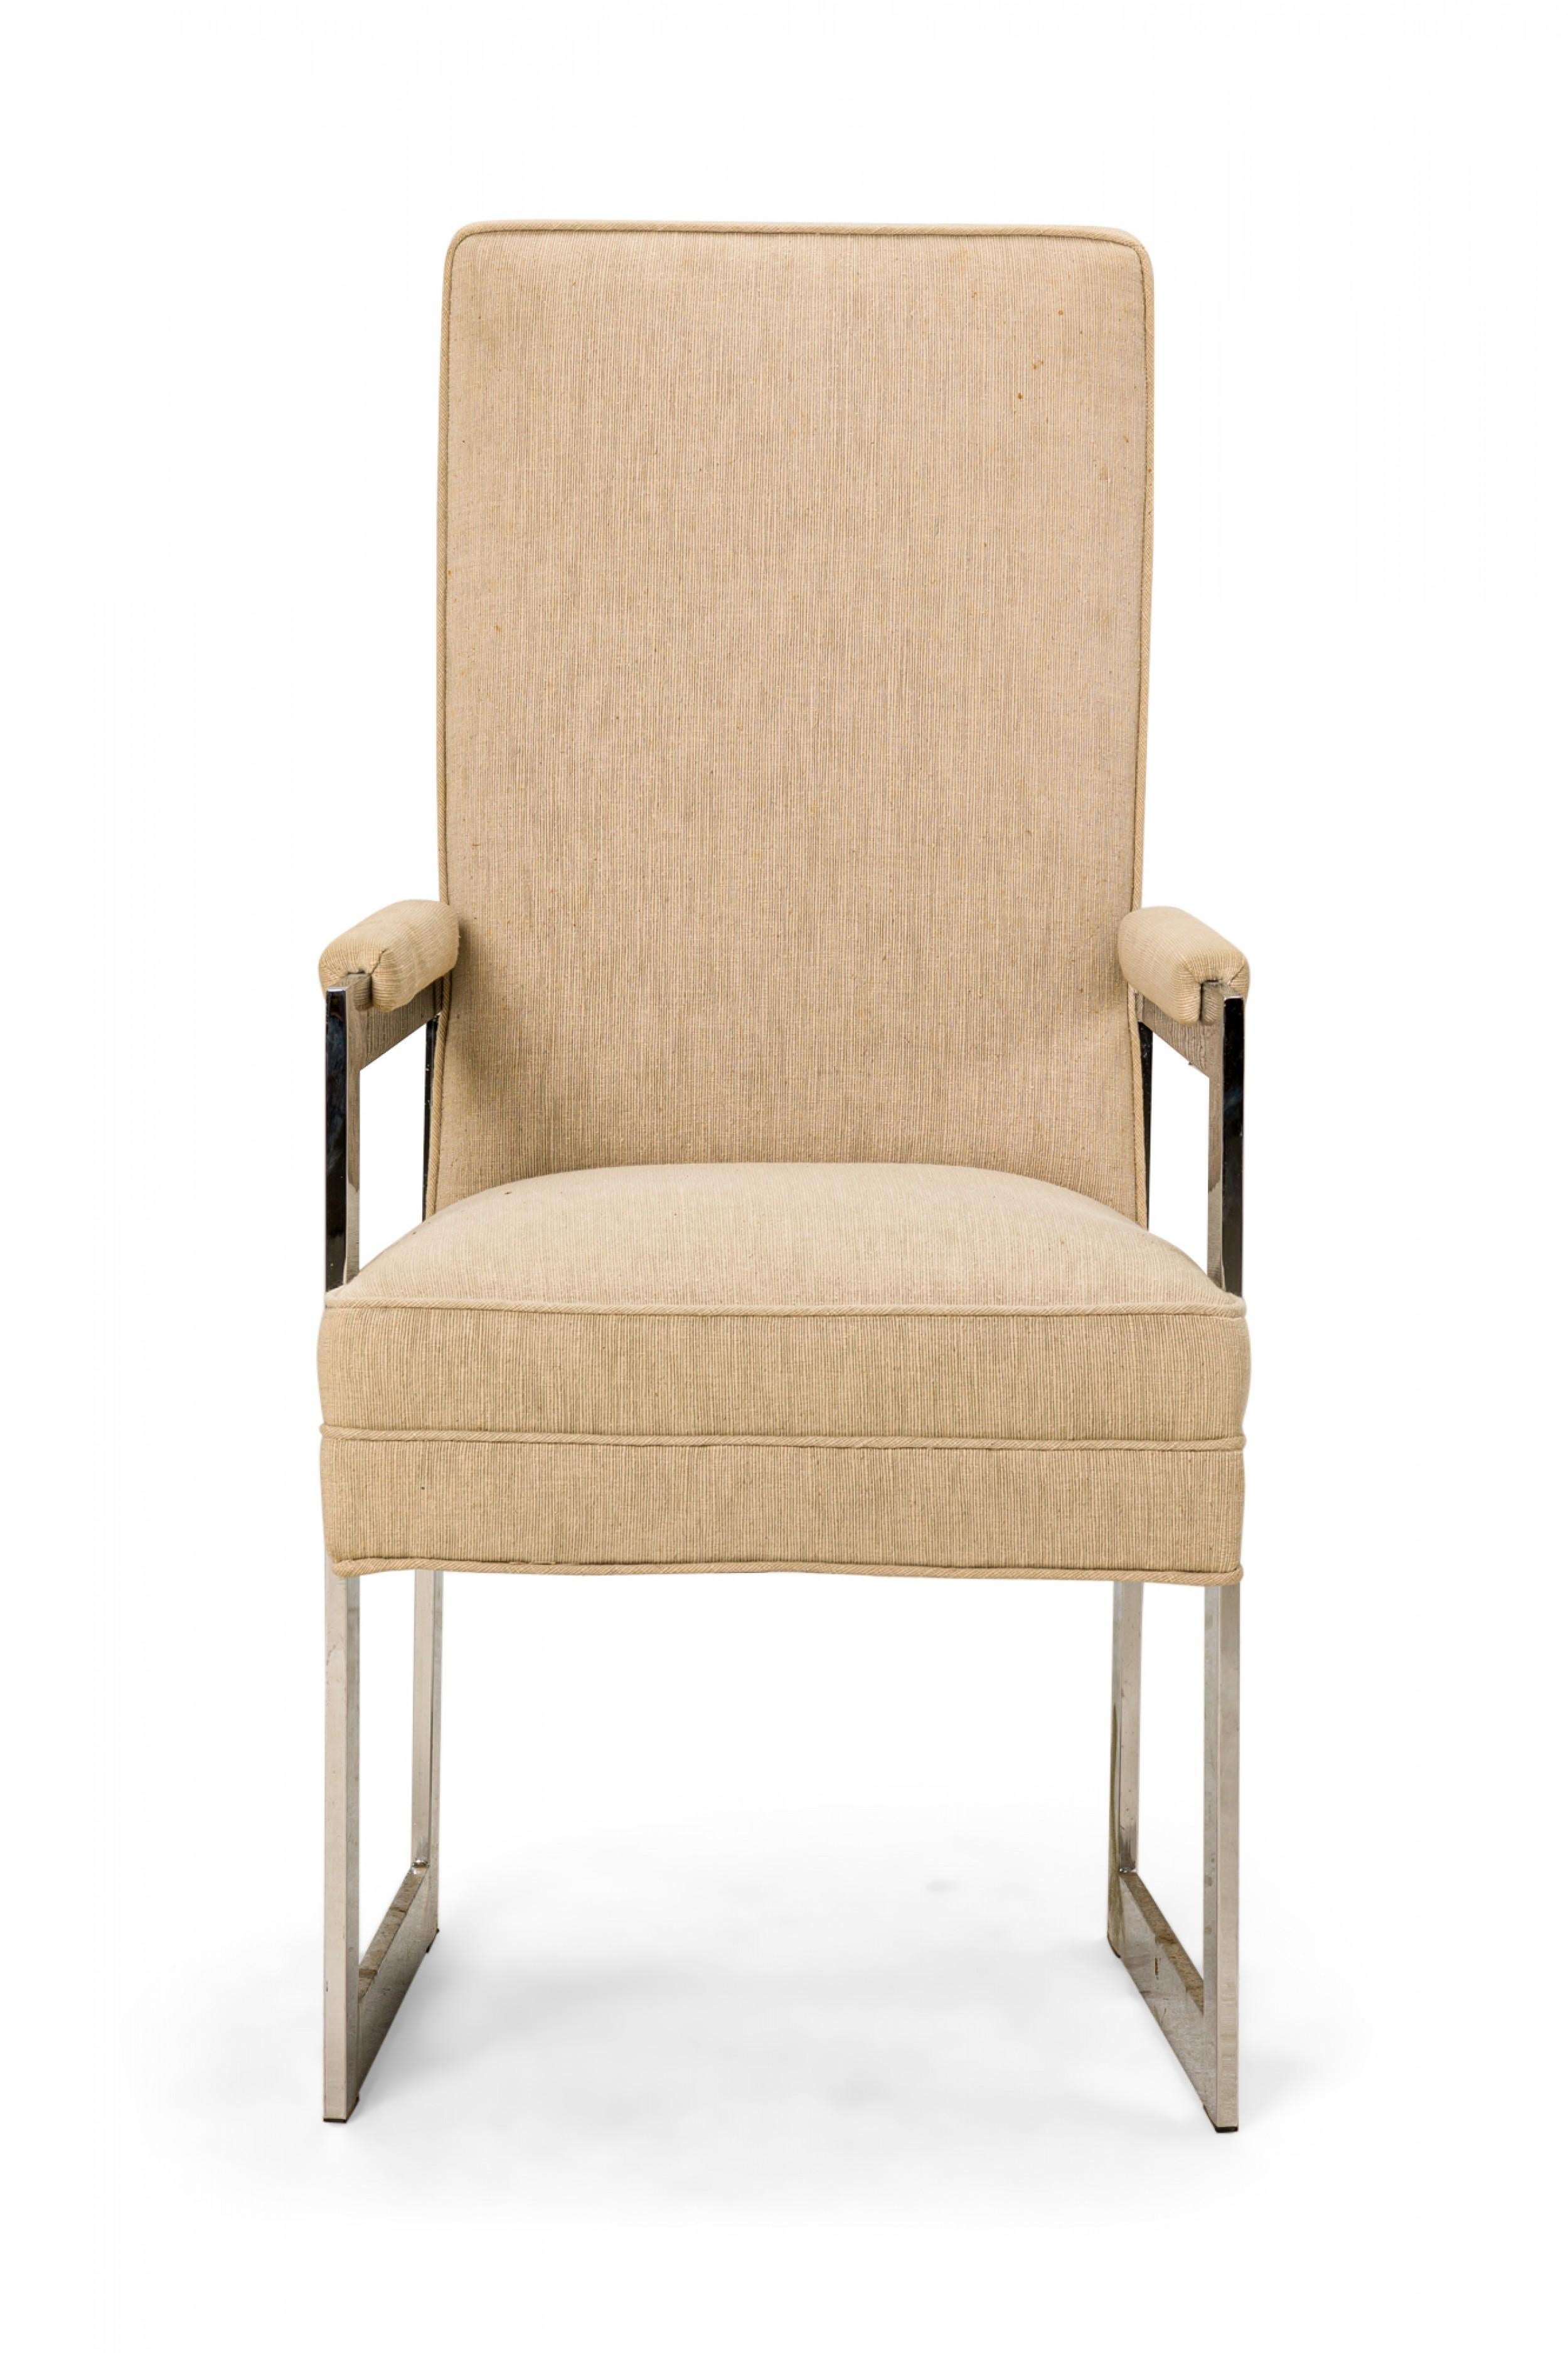 ENSEMBLE de 8 chaises de salle à manger américaines Mid-Century comprenant deux fauteuils et six chaises latérales tapissés de tissu beige avec des housses de siège assorties, et reposant sur des pieds carrés en aluminium poli.(COLLECTION PACE)(PRIX